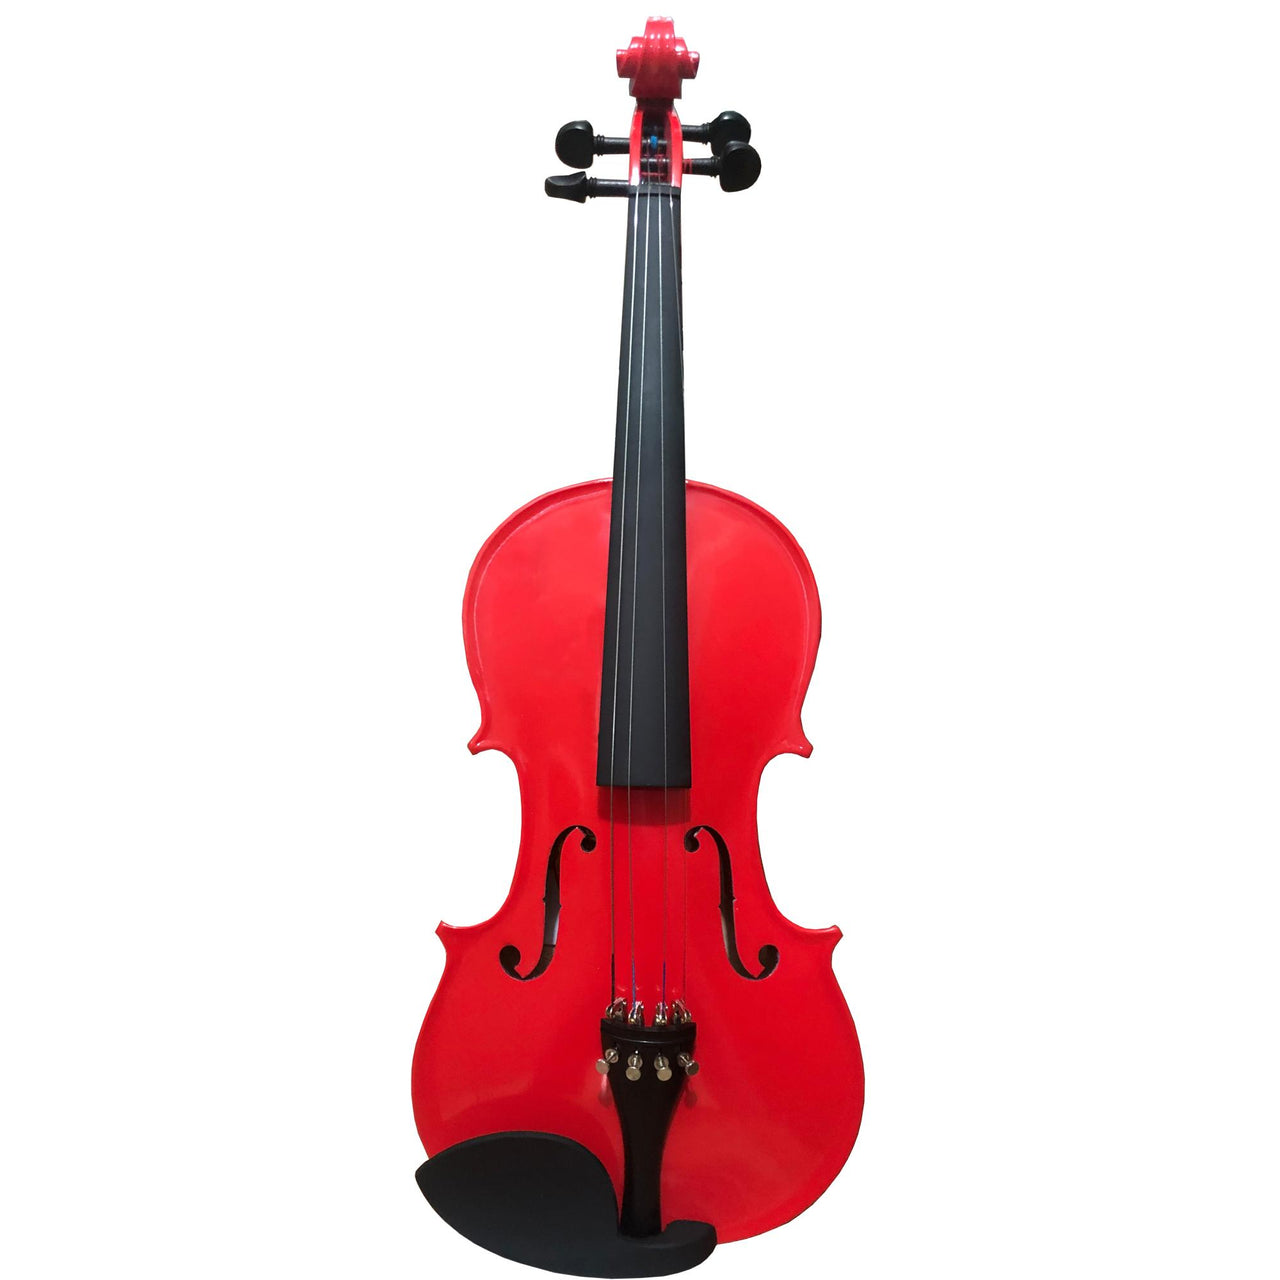 Violin Pearl River 4/4 Rojo Tinto Estudiante C/estuche, Mv005rd